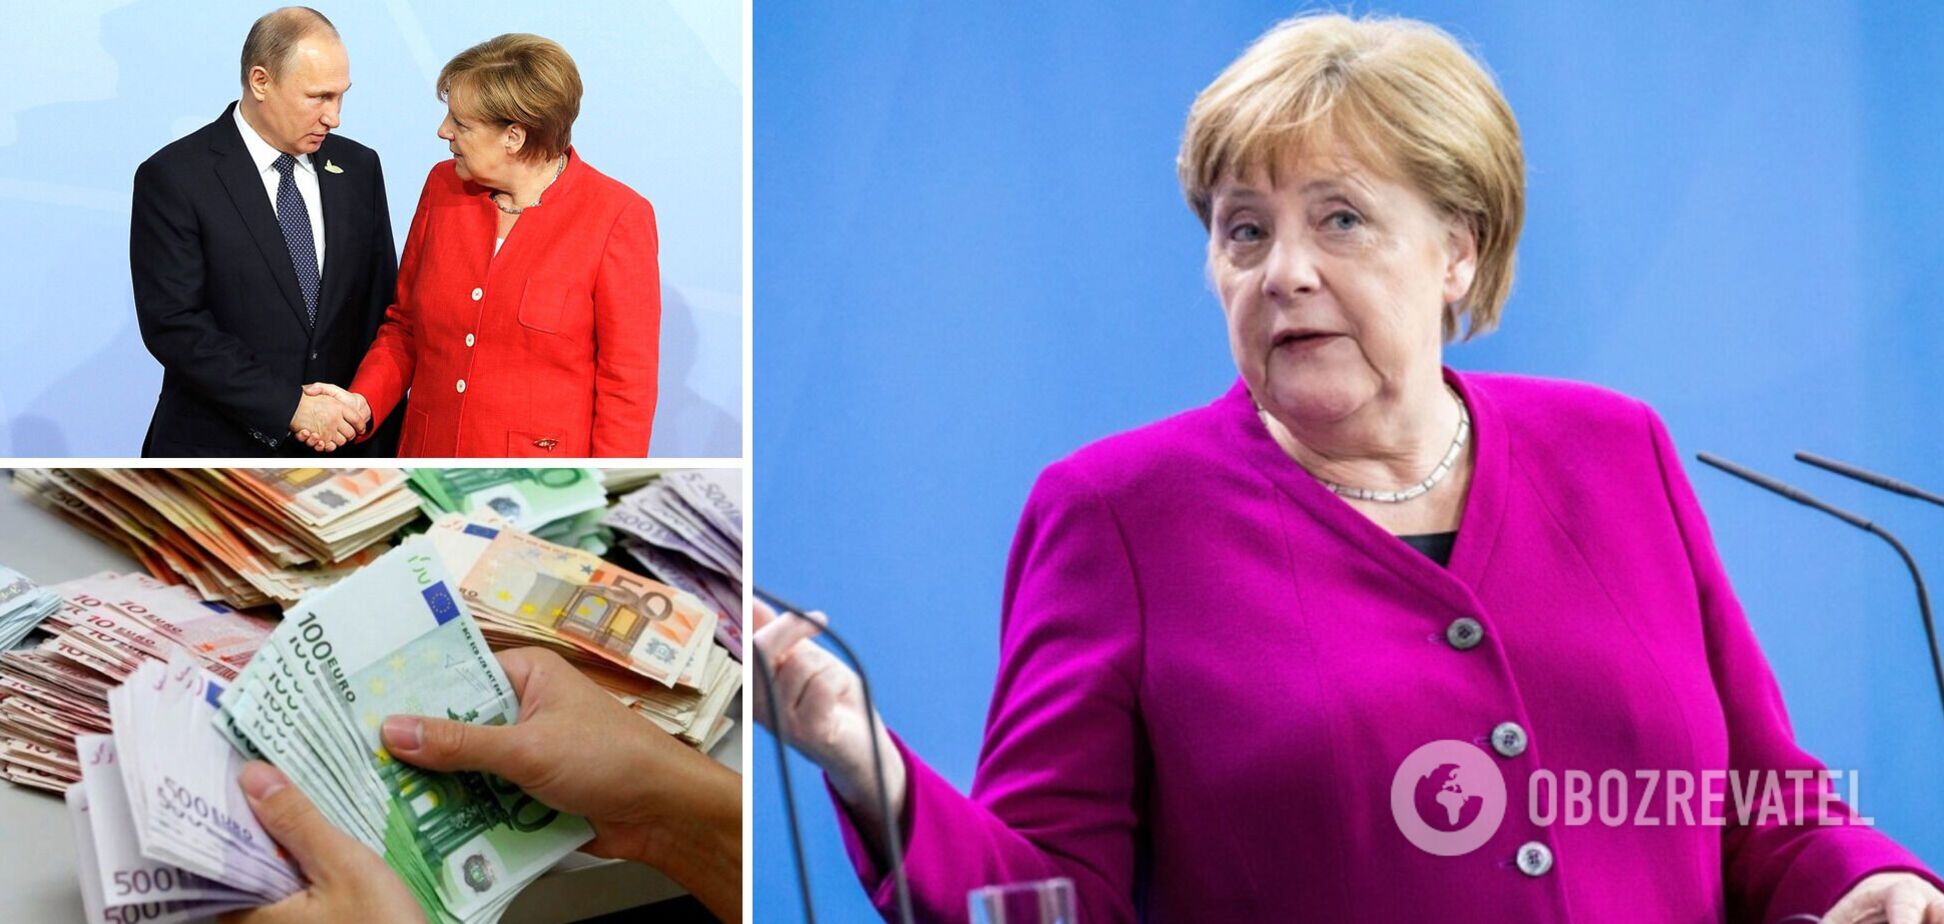 55 тыс. евро на прически и макияж: Меркель, отличившаяся цинизмом насчет Украины, попала в скандал. Где она сейчас. Фото